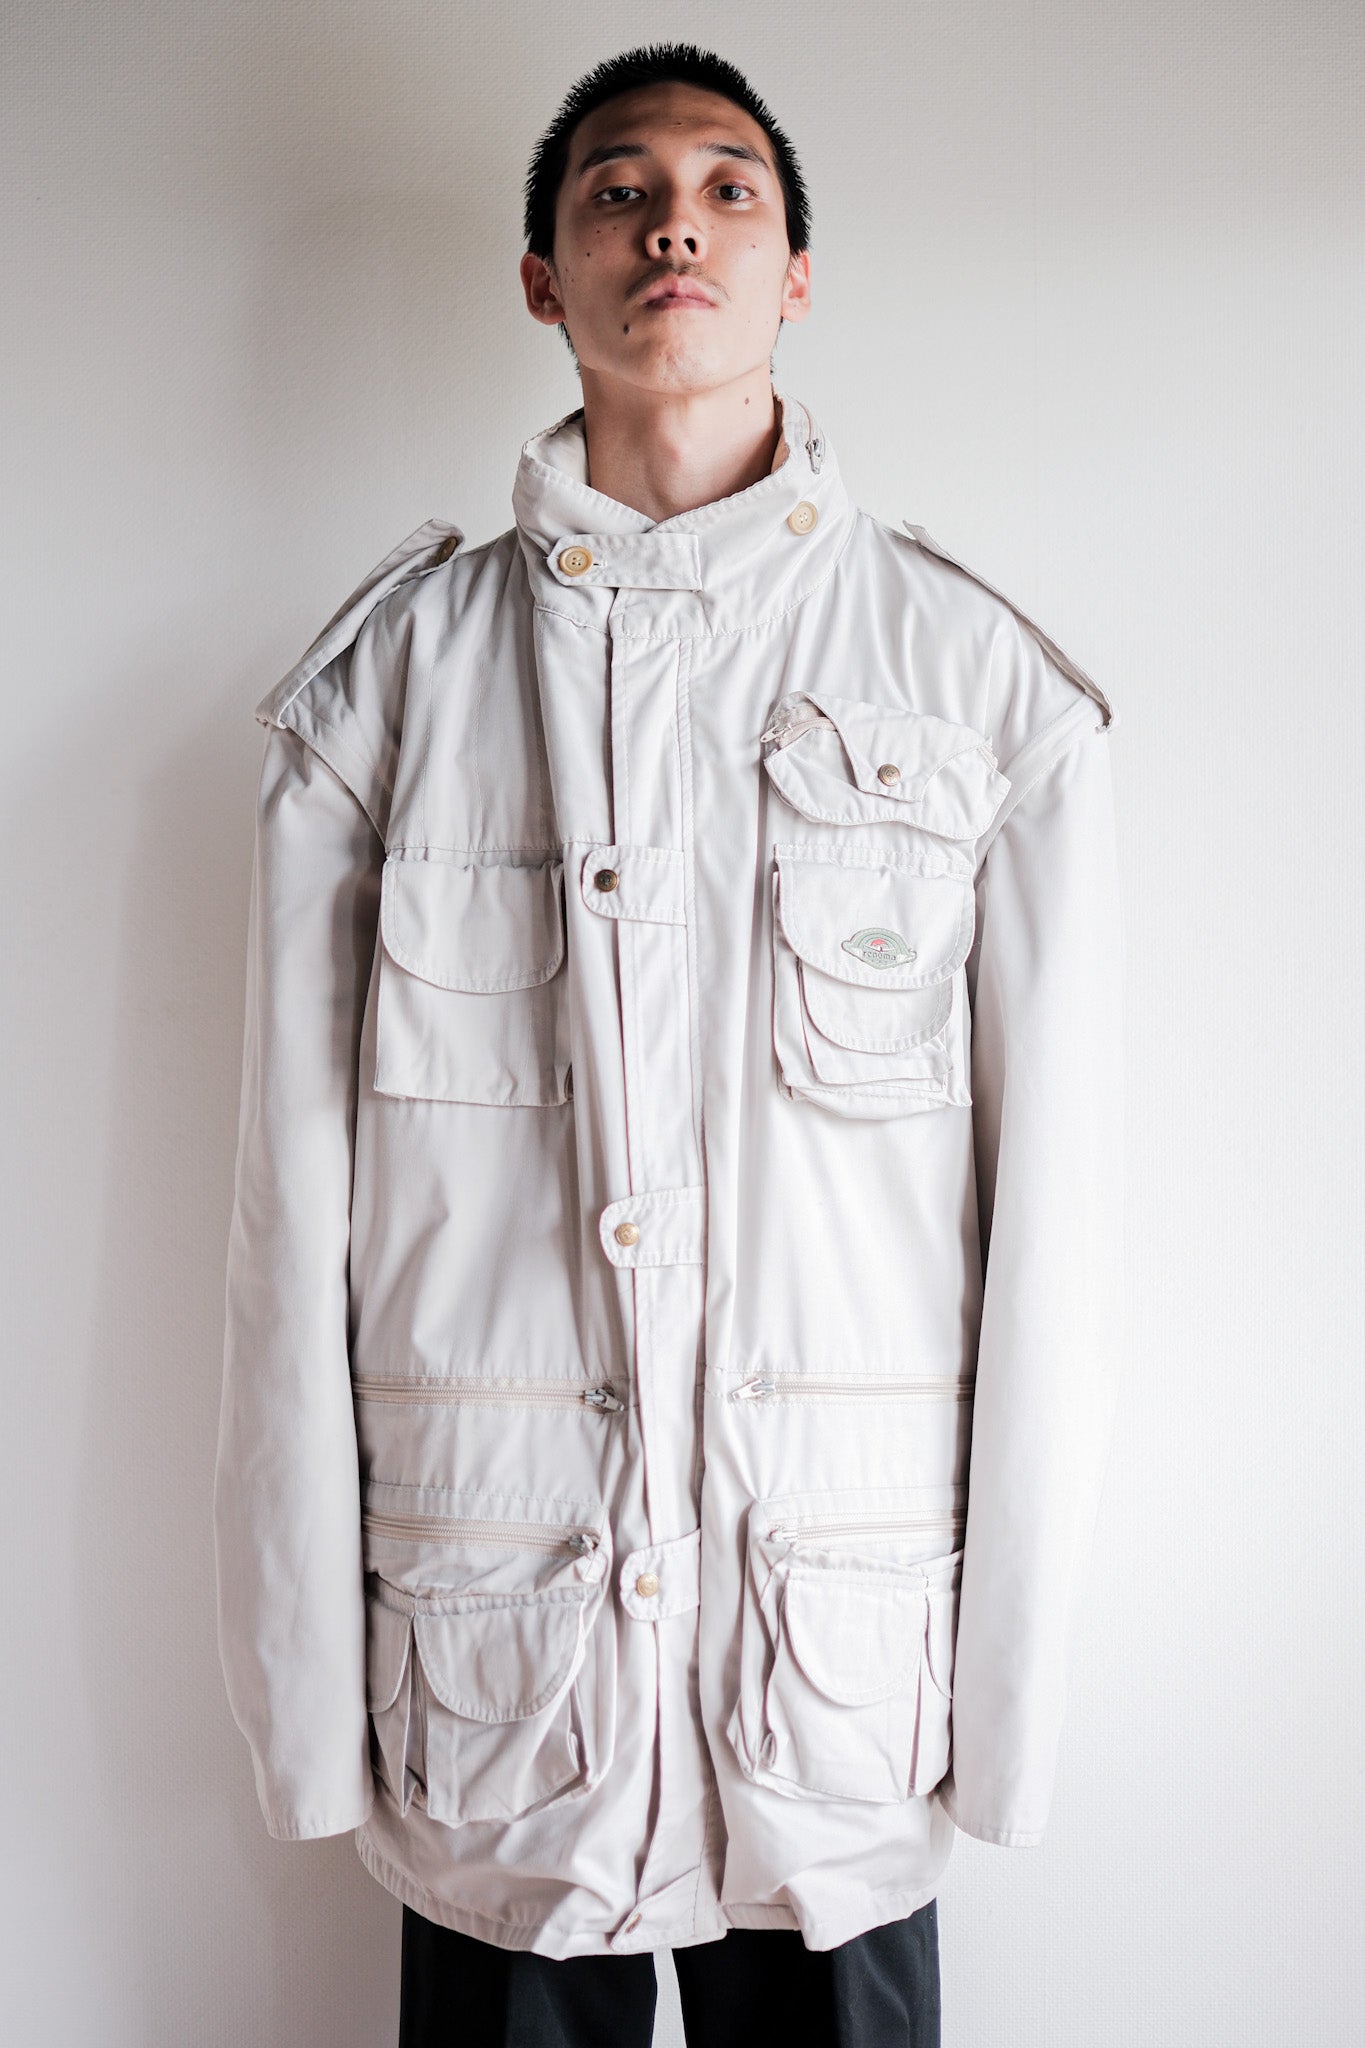 [~90 年代] 舊 Renoma Paris 可拆卸袖多口袋帶襯裡夾克